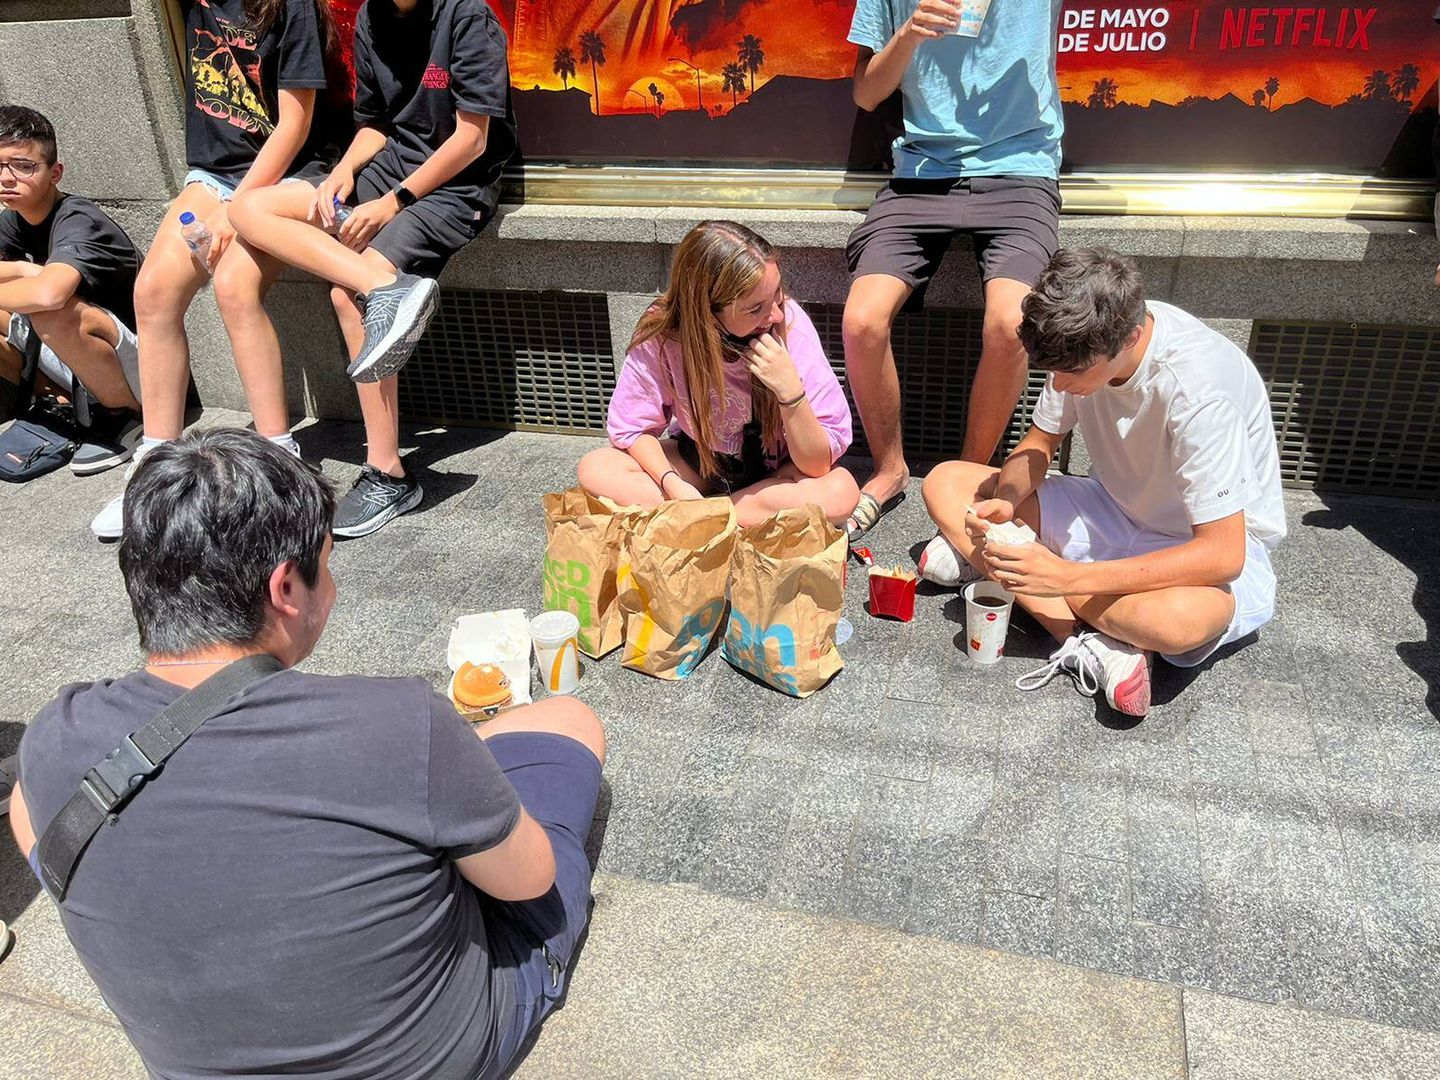 Los adolescentes comiendo en el suelo bajo el sol mientras hacen cola. (A.F.)